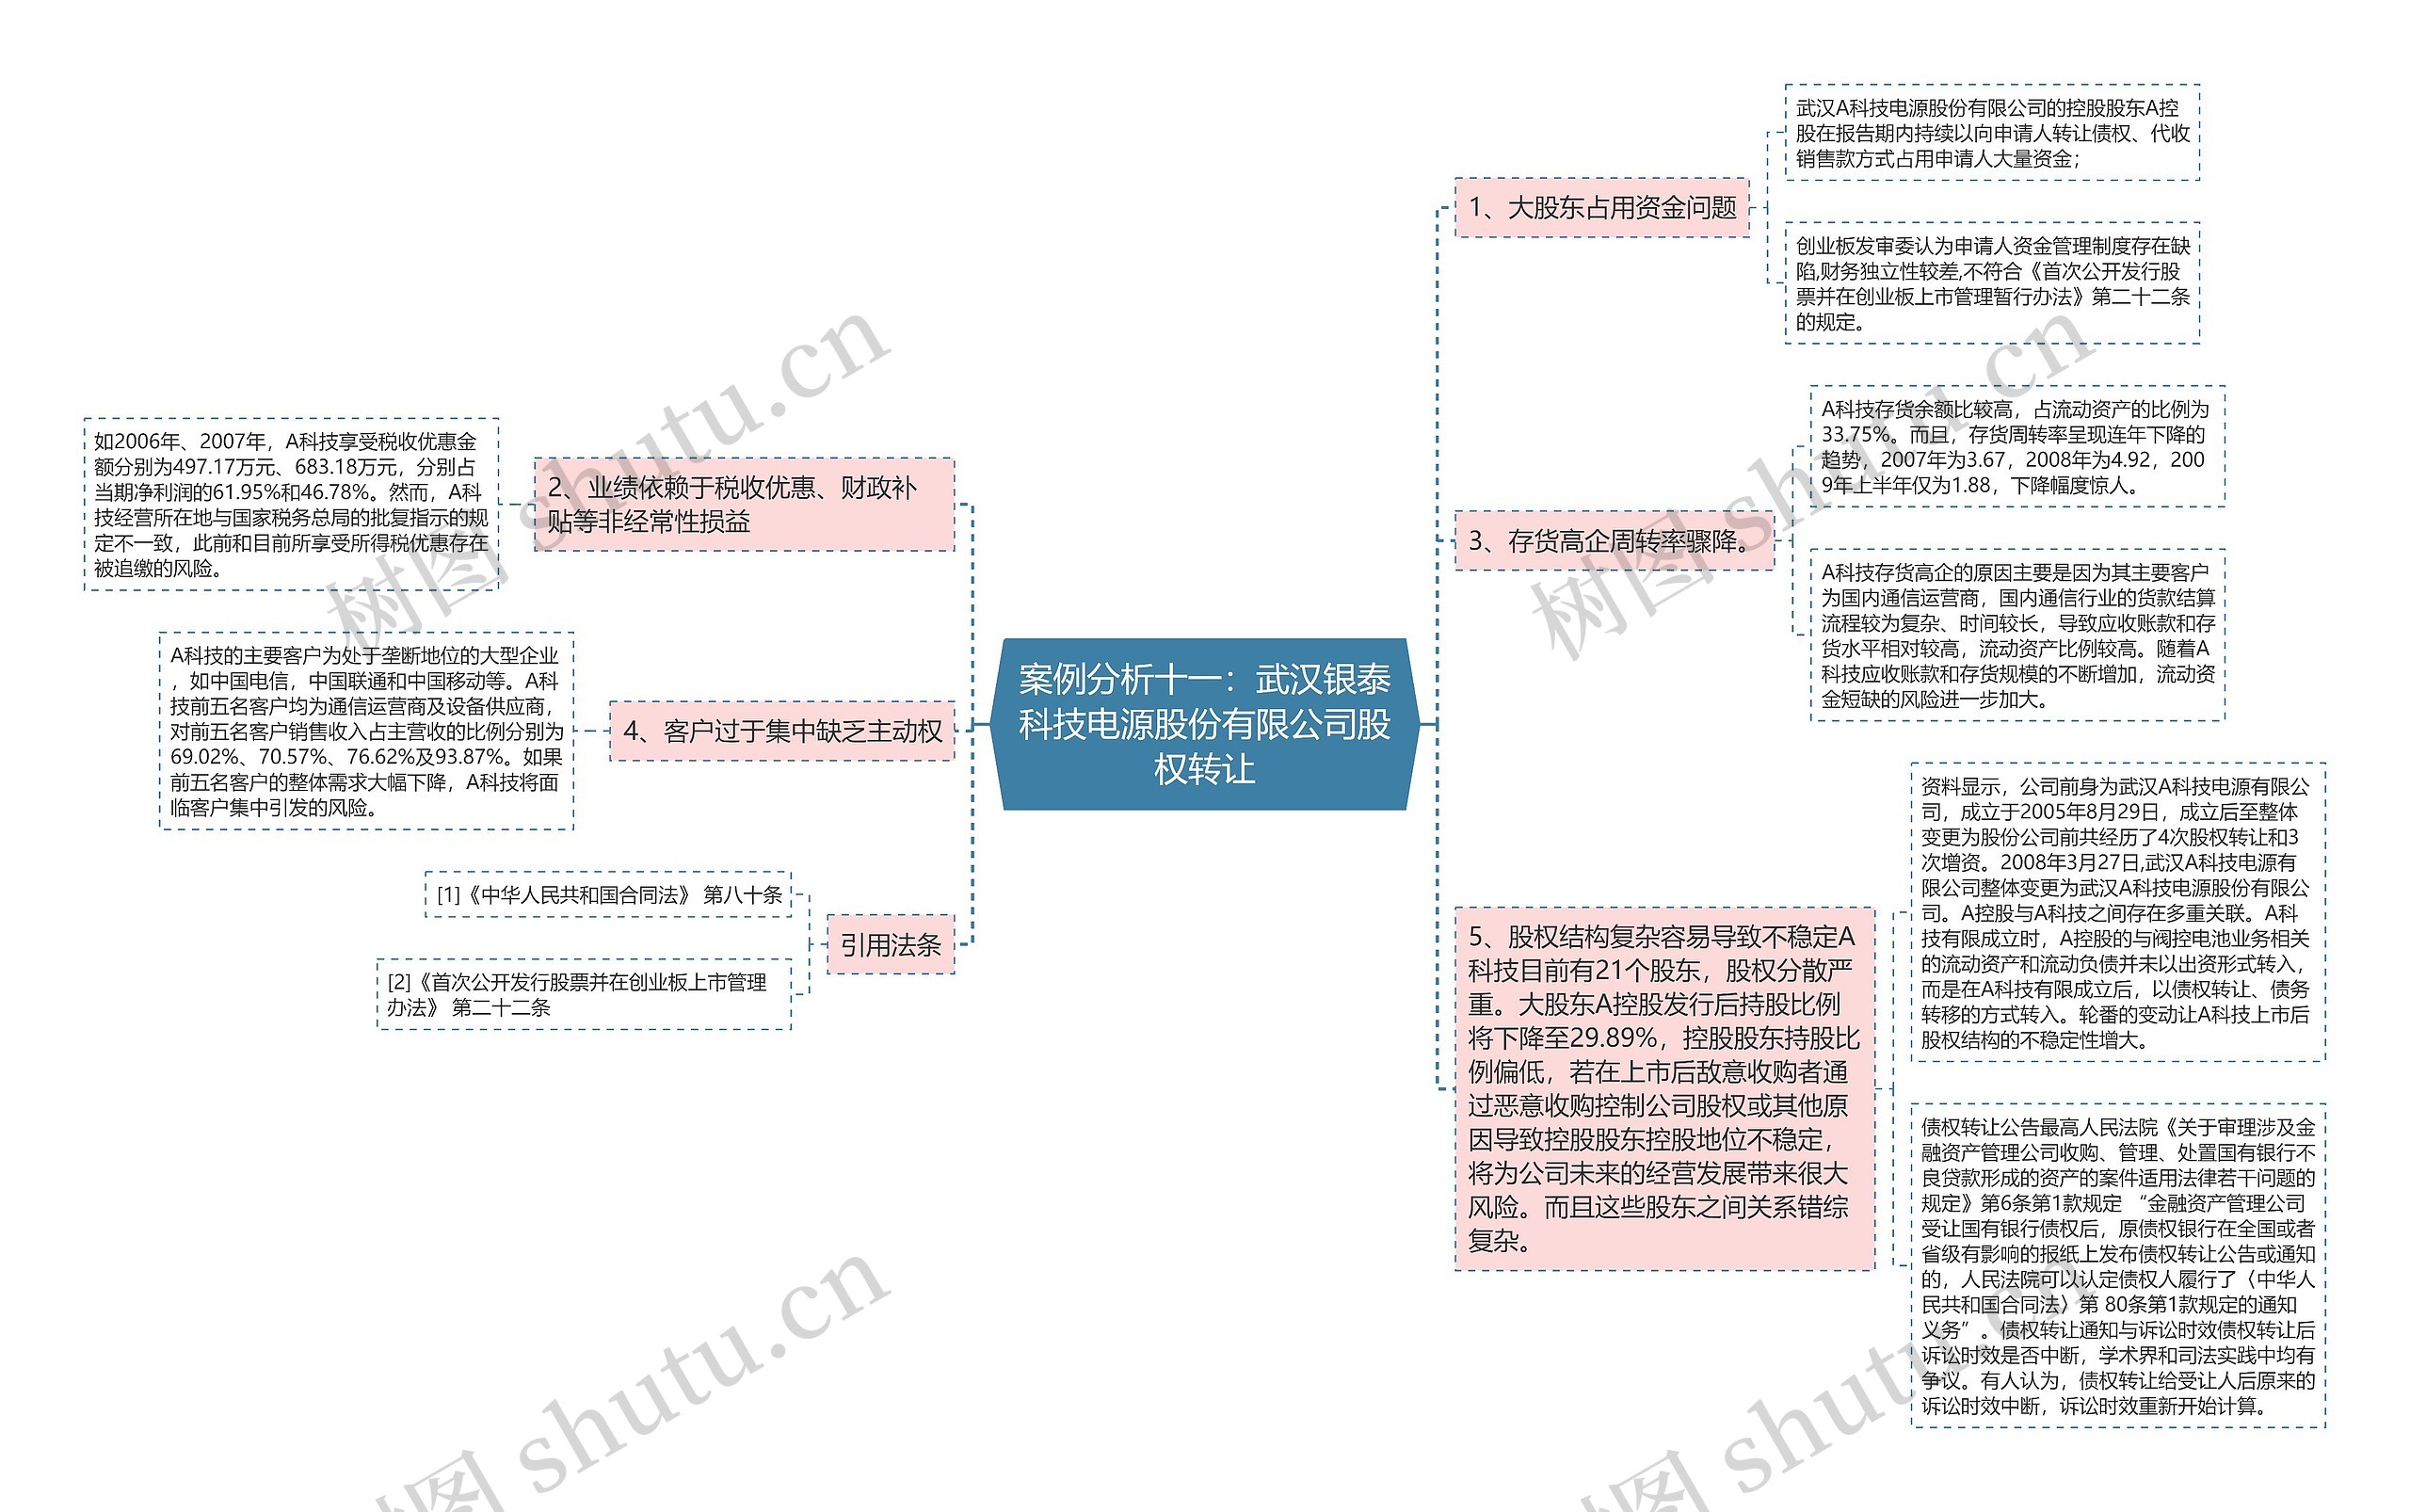 案例分析十一：武汉银泰科技电源股份有限公司股权转让